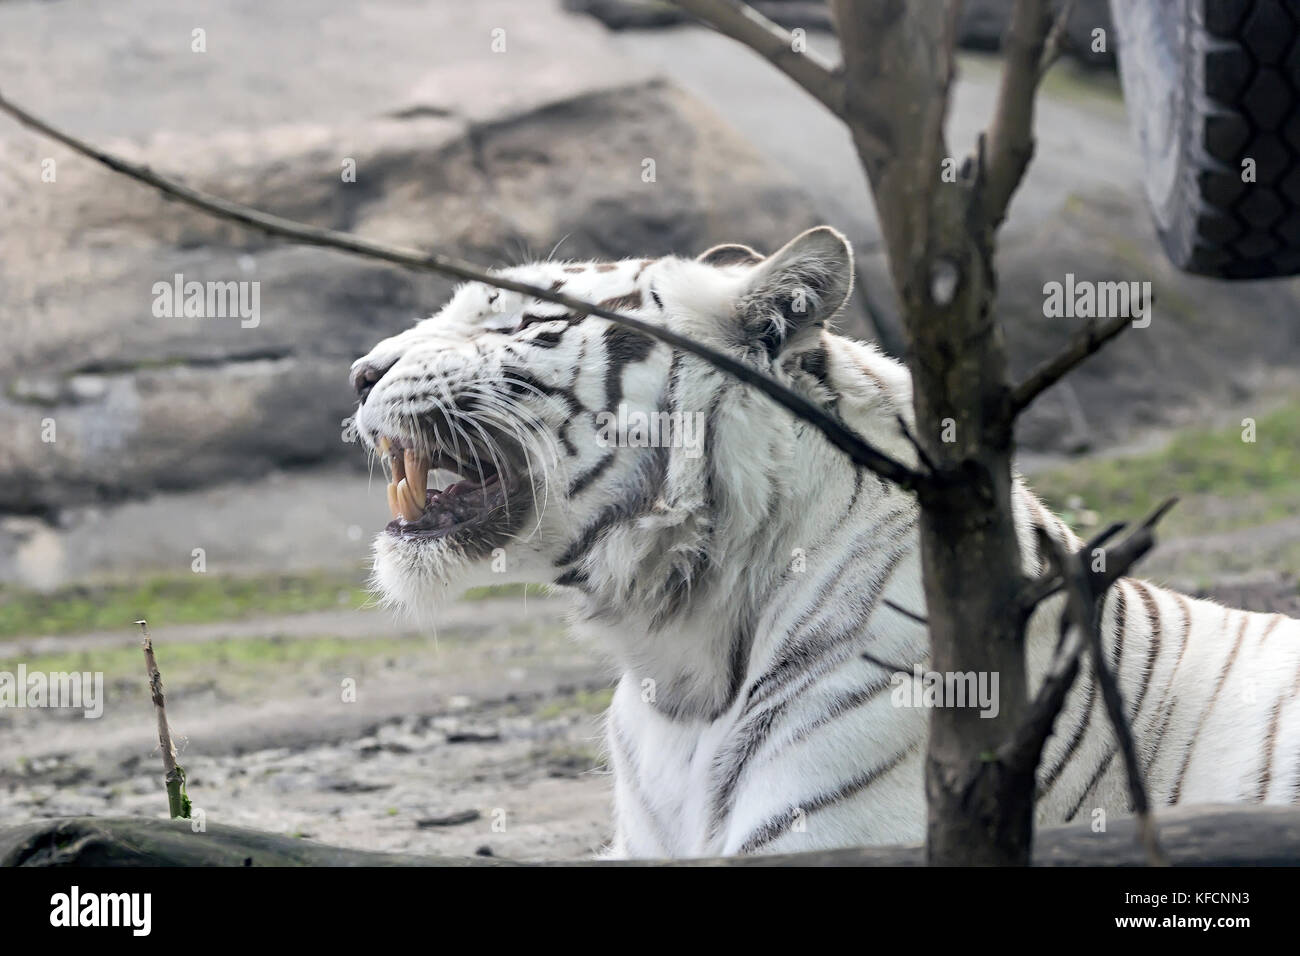 Rare white tiger , shootin from far , summer 2017 Stock Photo